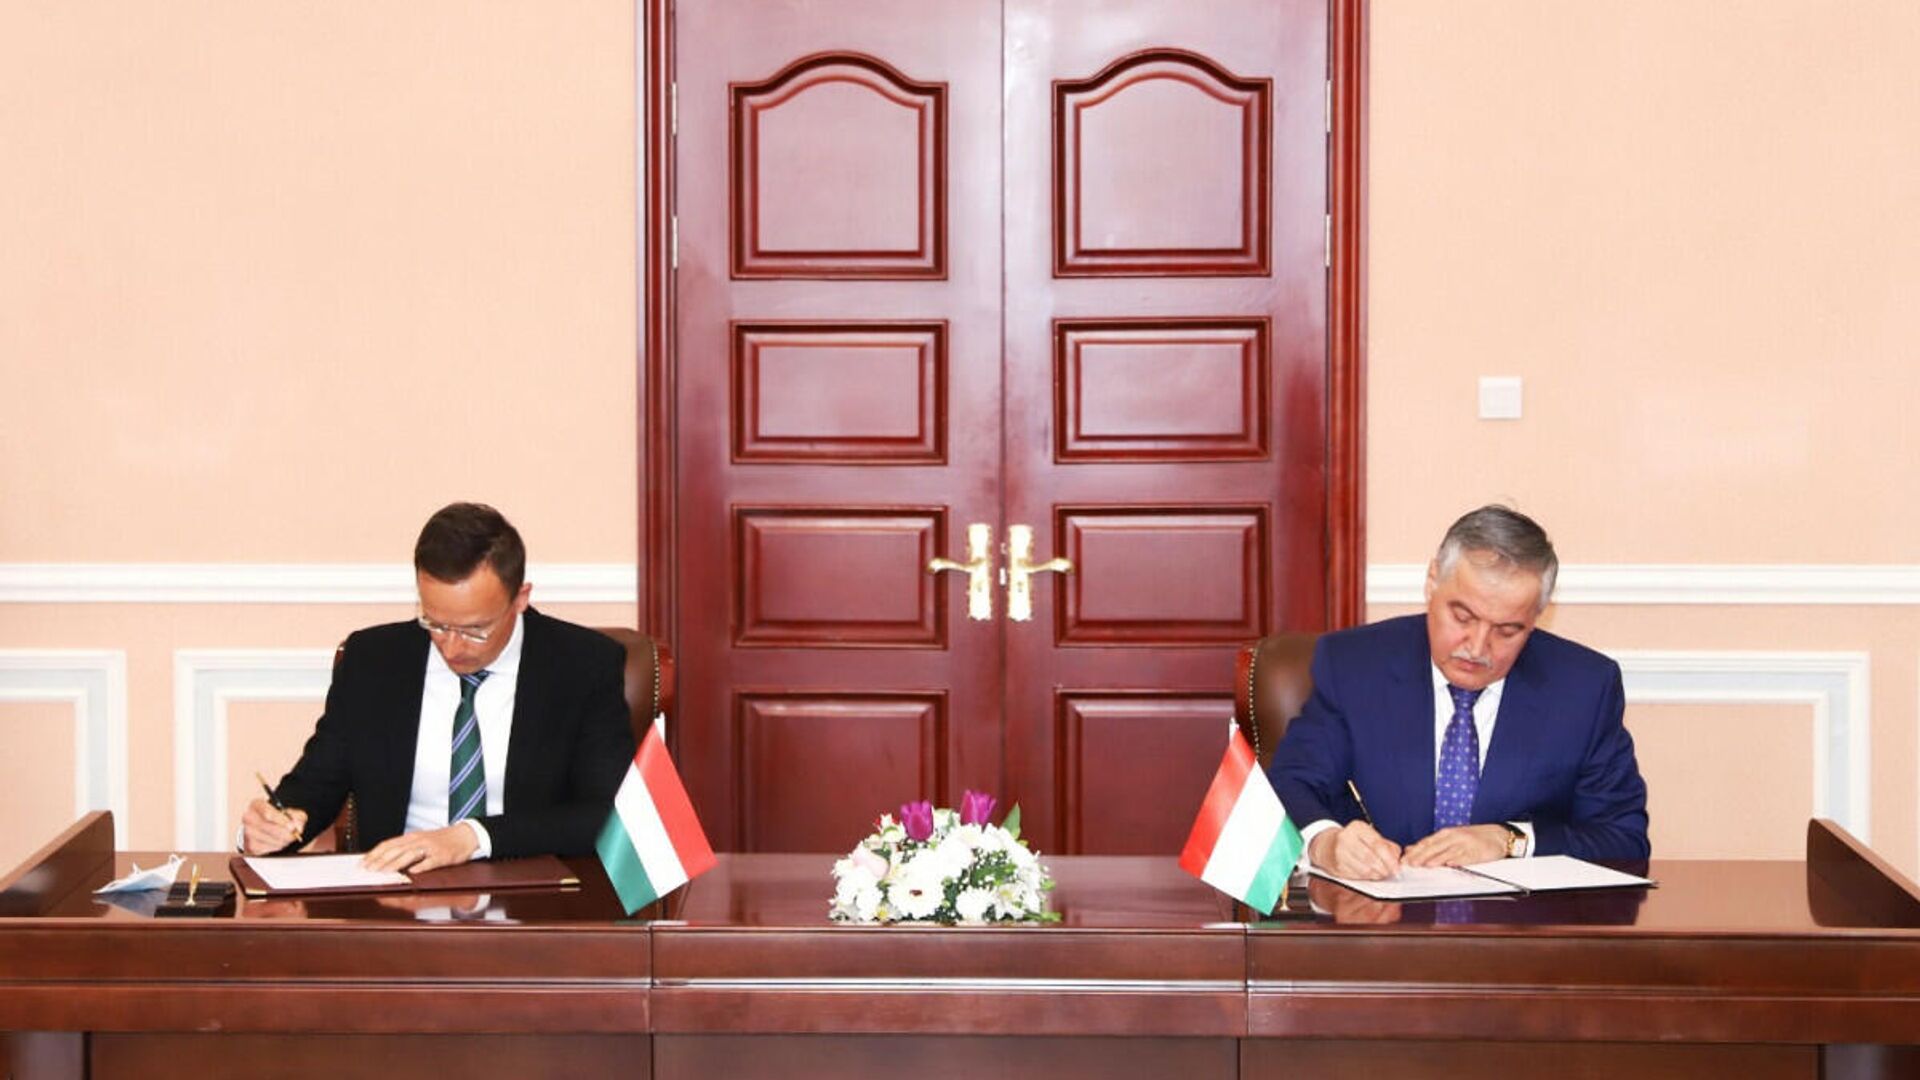 Подписание соглашения о сотрудничестве между Таджикистаном и Венгрии - Sputnik Тоҷикистон, 1920, 07.04.2021